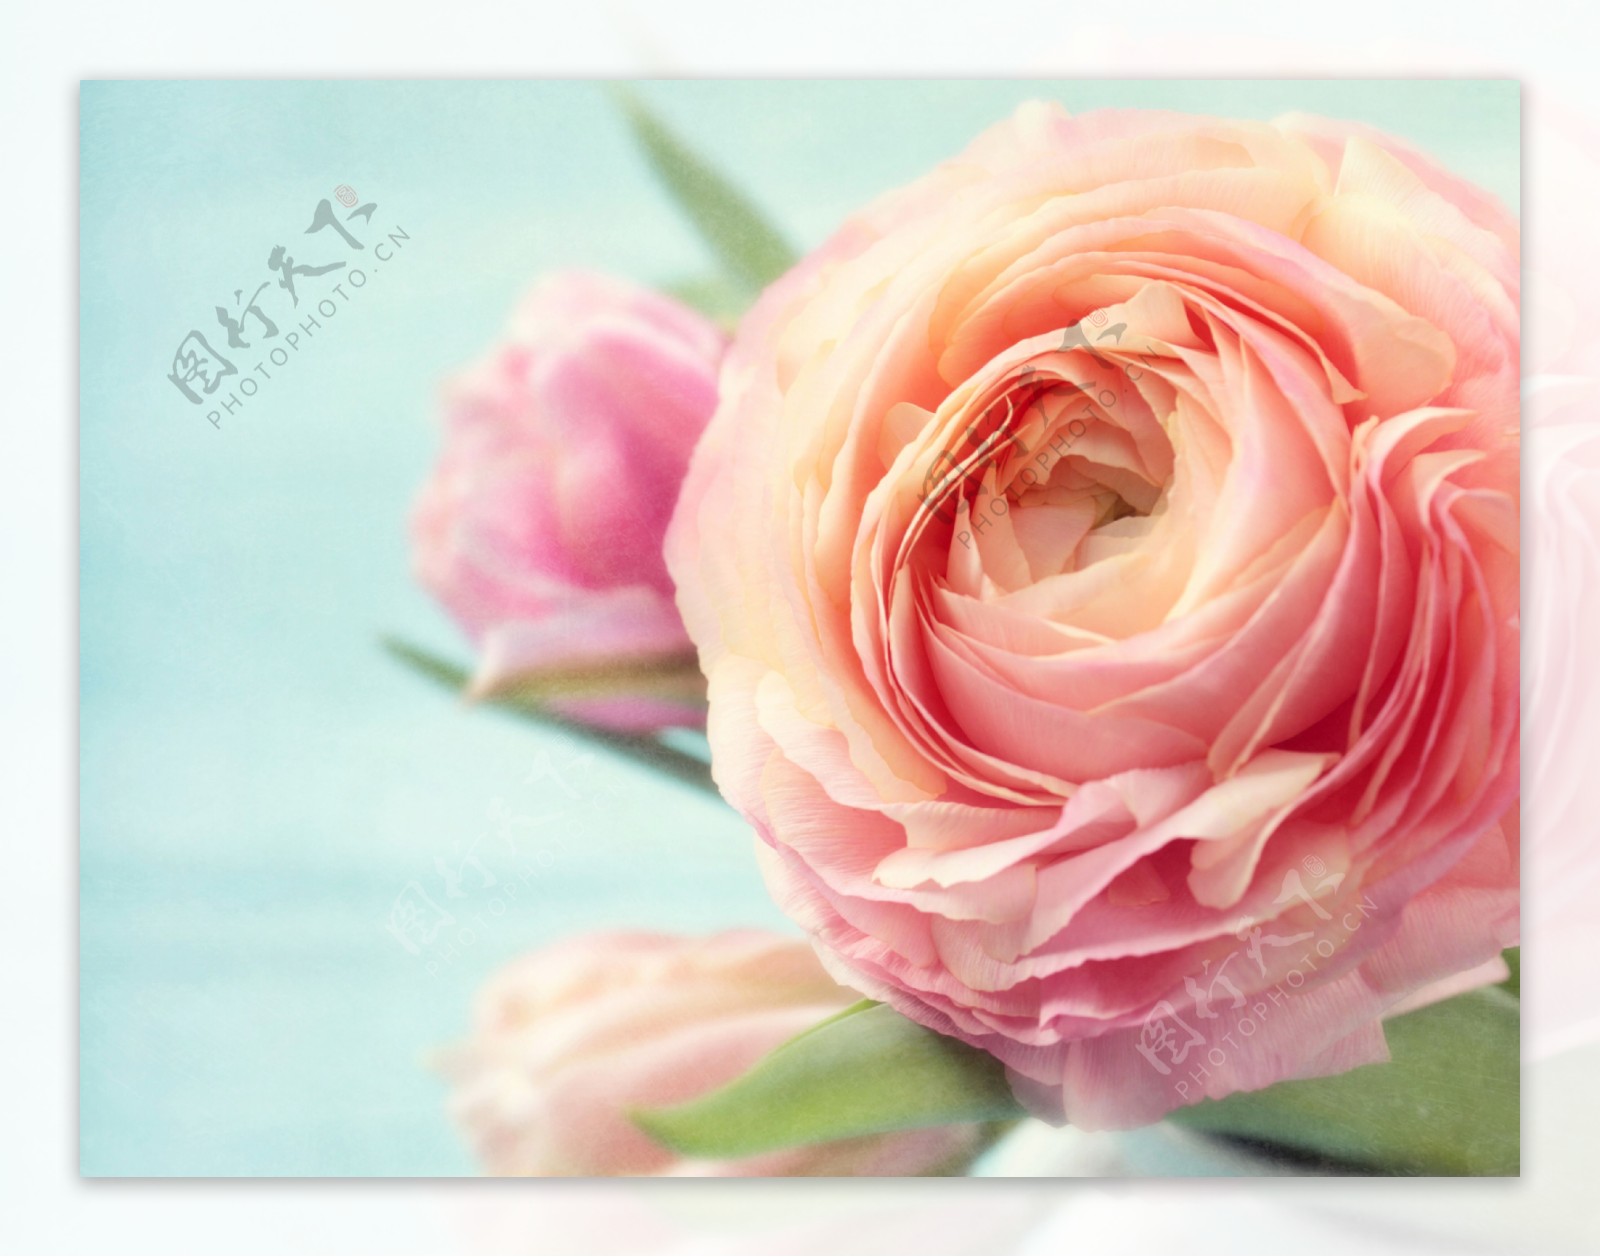 一大朵粉色玫瑰花图片